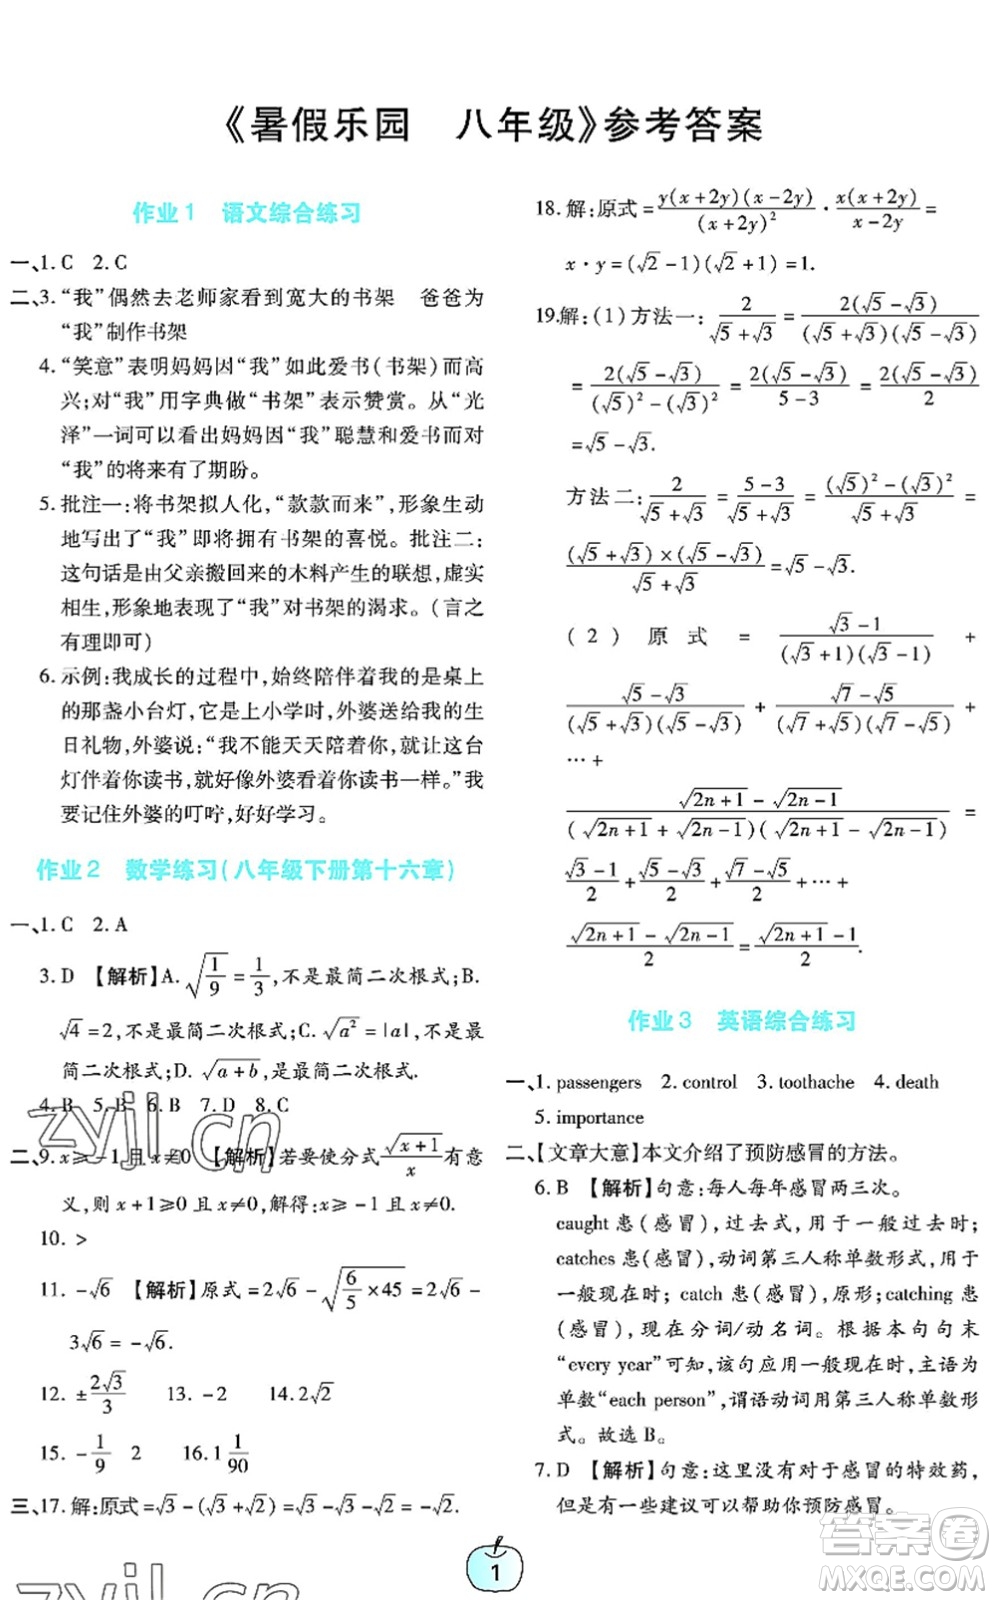 广东教育出版社2022暑假乐园八年级文理科综合通用版答案